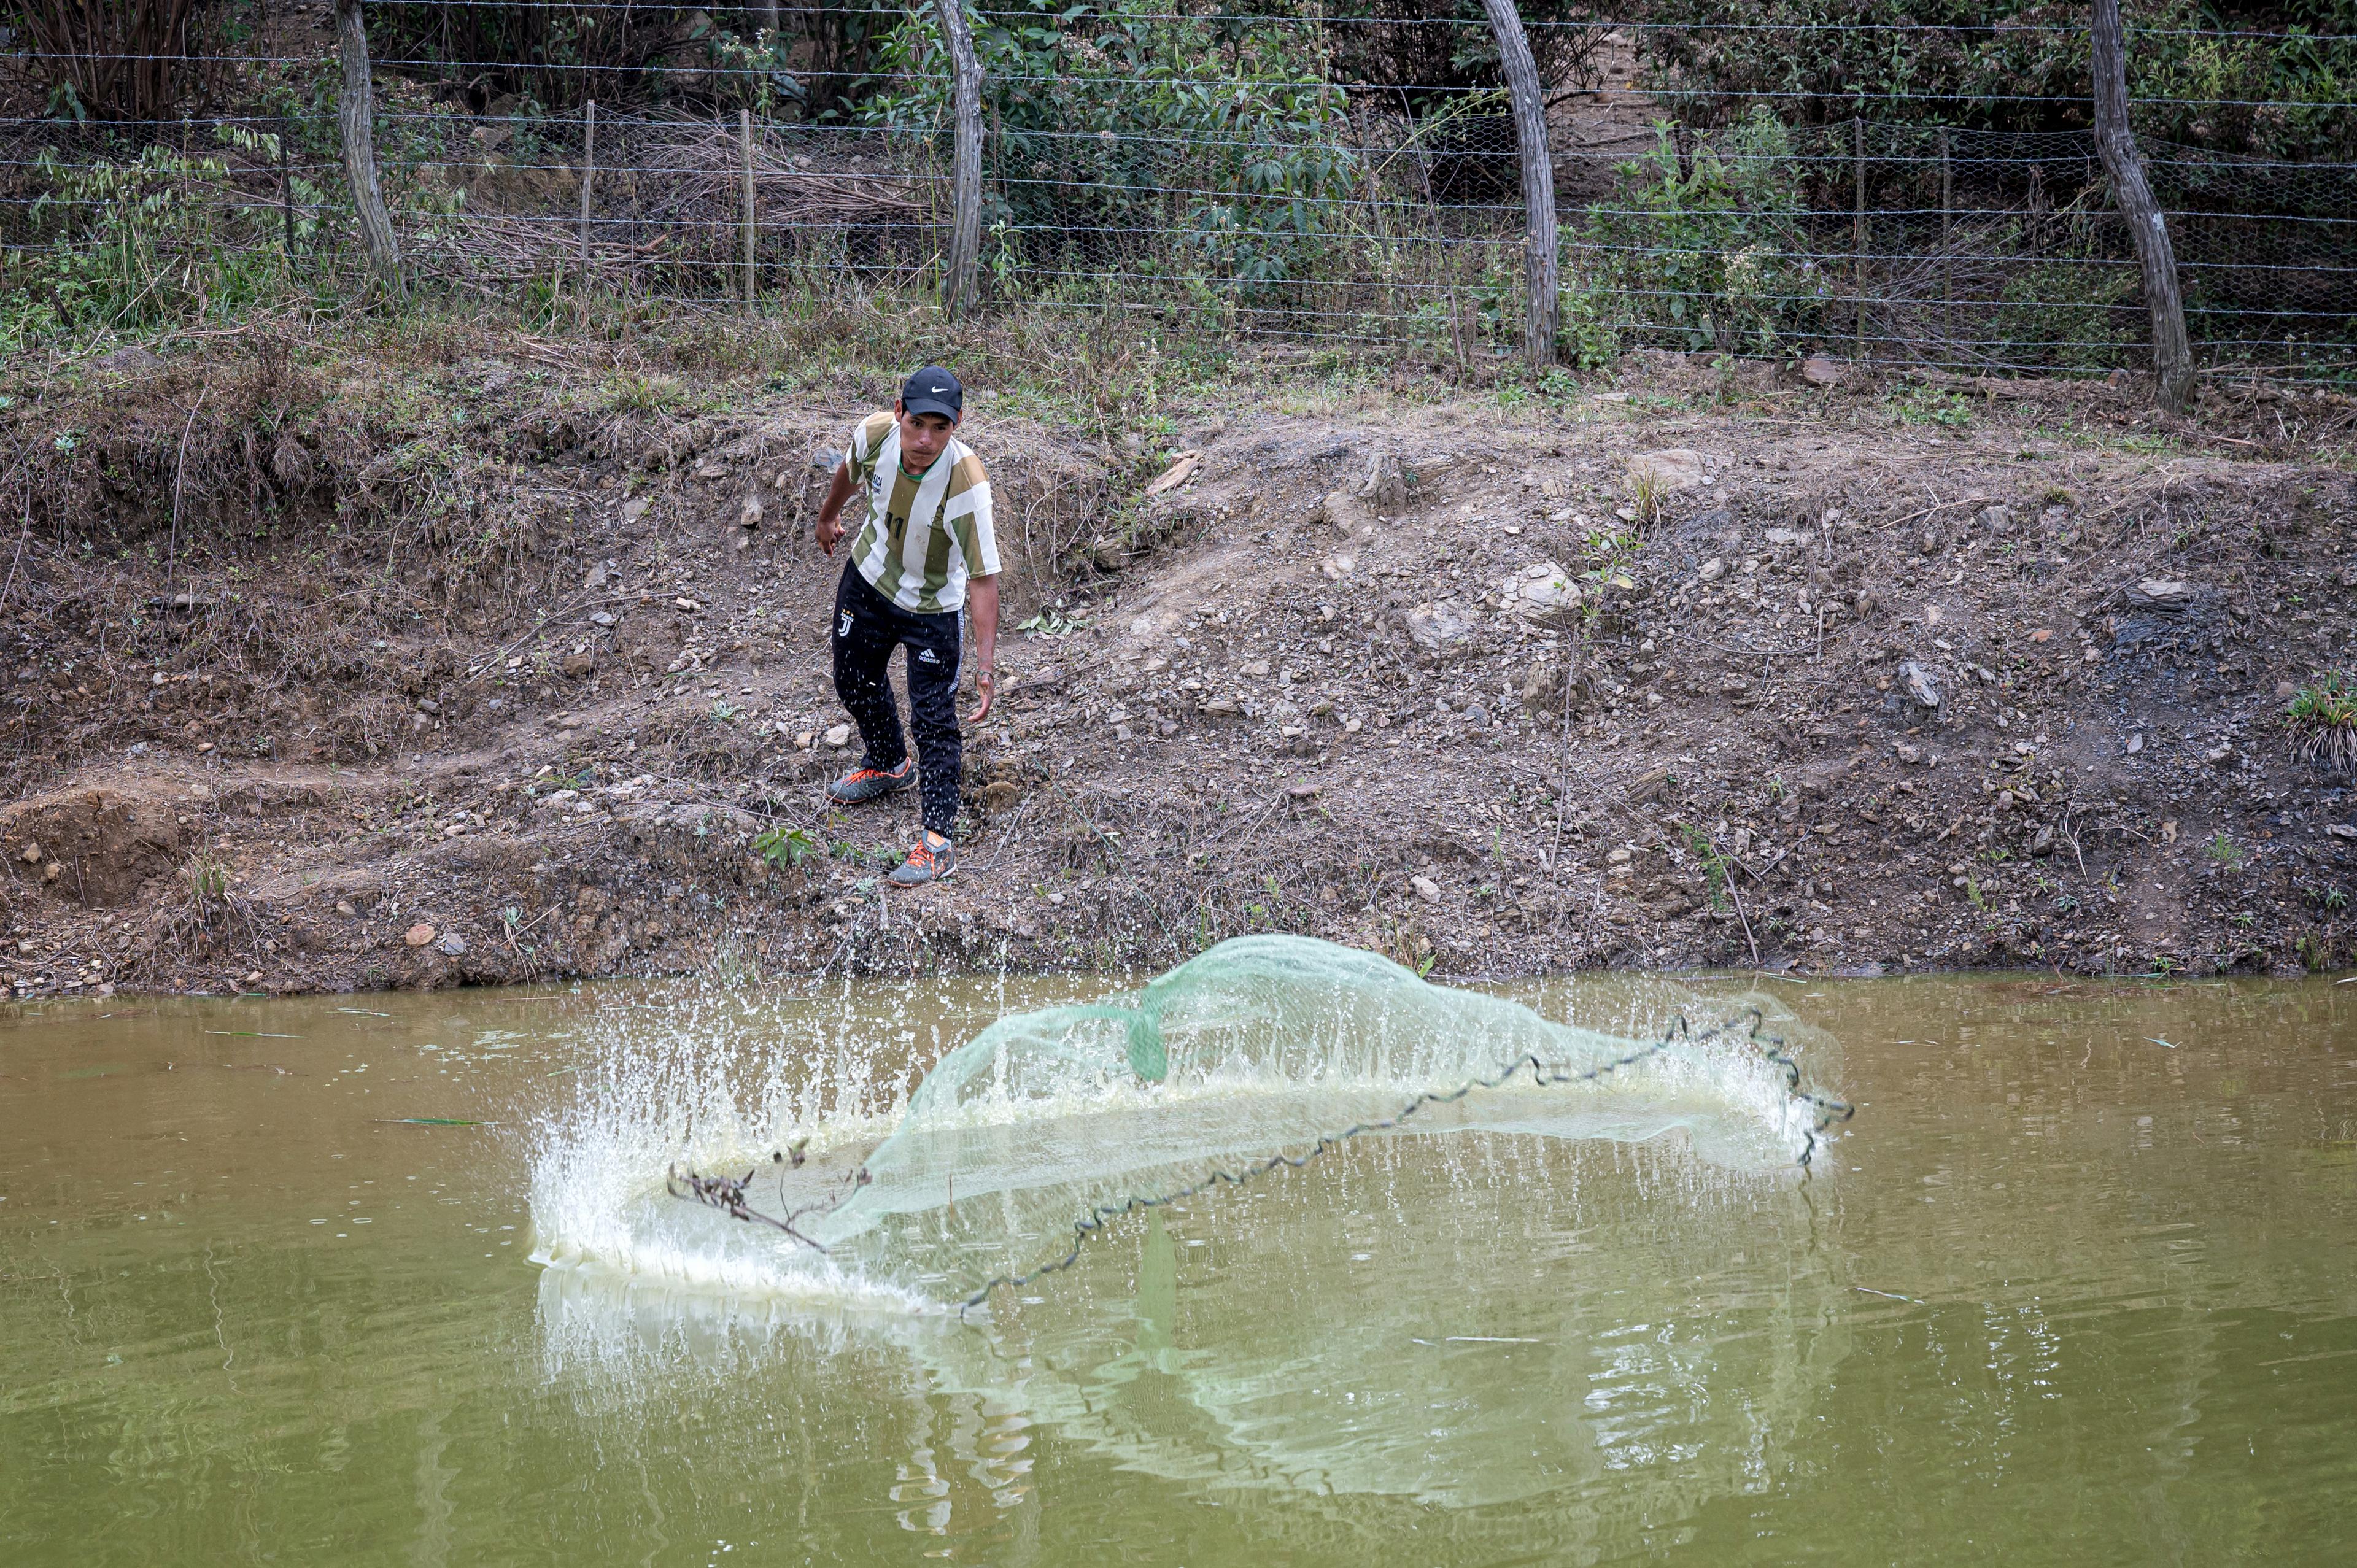 Un homme lance un filet, qui atterrit dans un étang en formant un cercle.